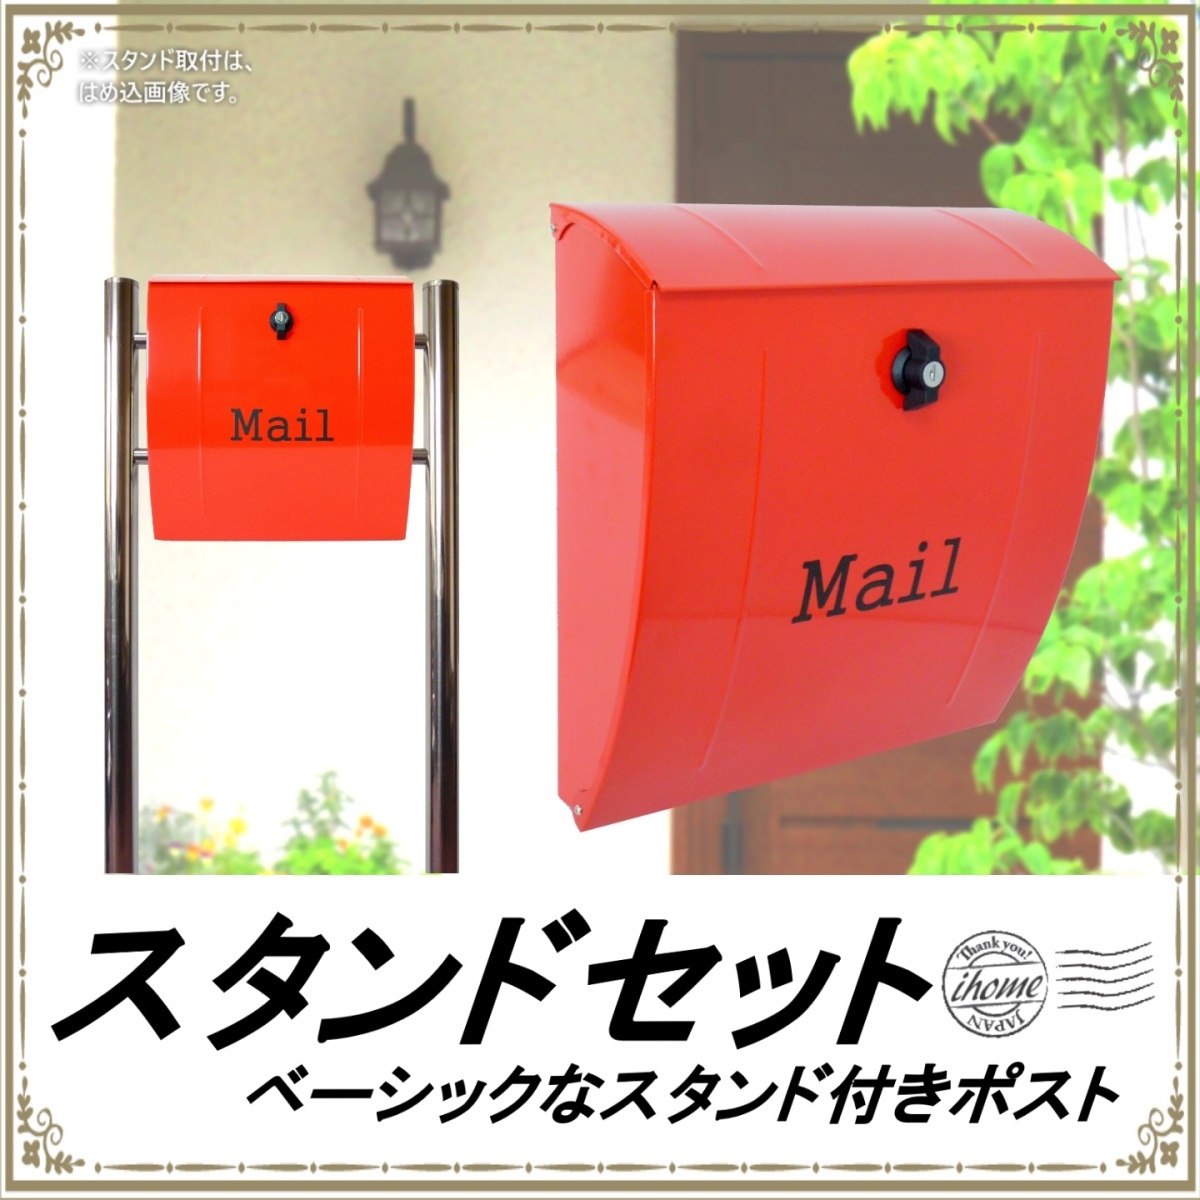 郵便ポスト郵便受けおしゃれかわいい人気北欧大型メールボックススタンド型プレミアムステンレスレッド赤色ポストpm021s